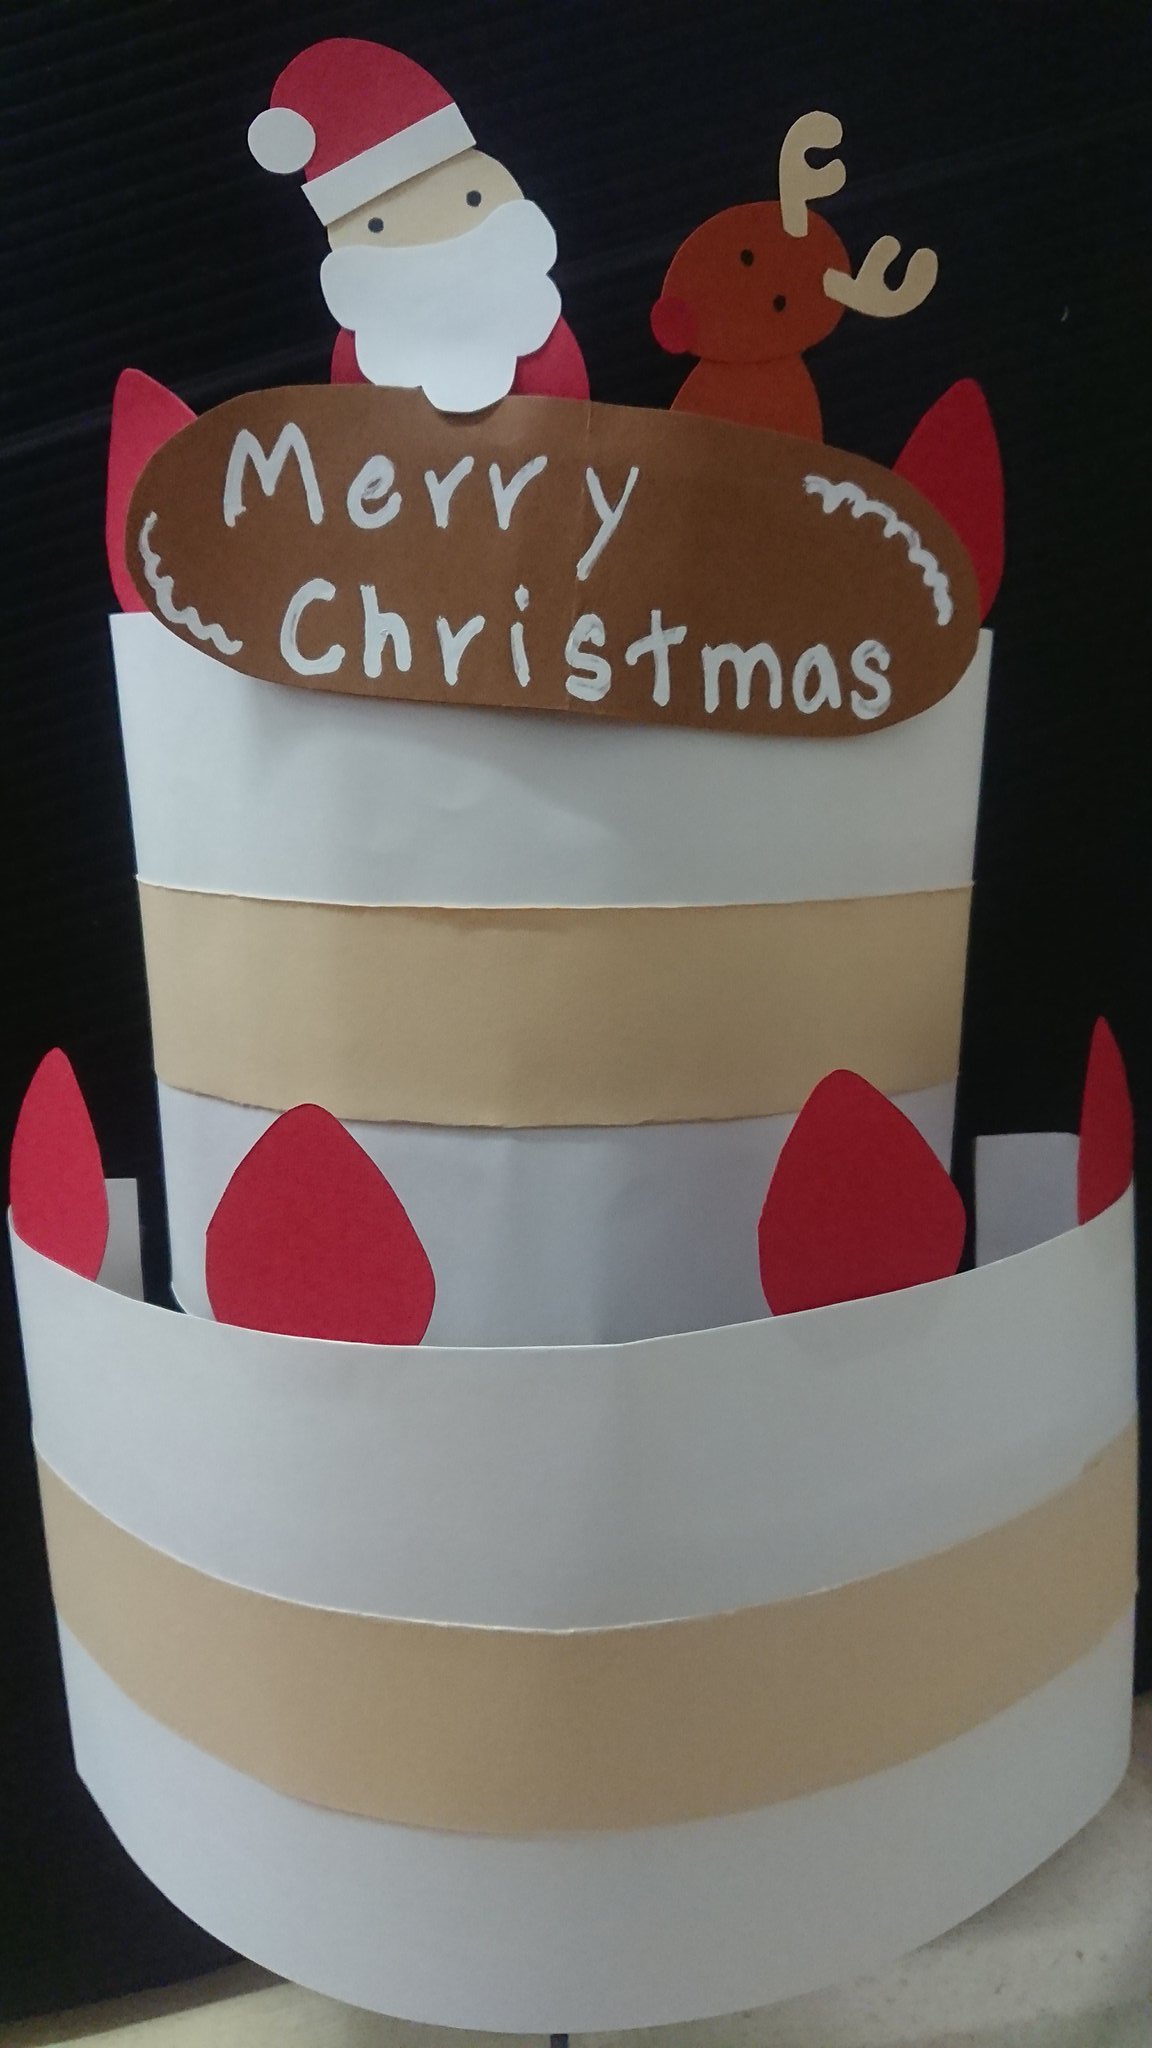 ふっちー 今年はケーキの看板作りができました 平面だと物足りないなと思い即興で作りましたが微妙すぎて 笑 セブンイレブン クリスマス ケーキ 看板 広告